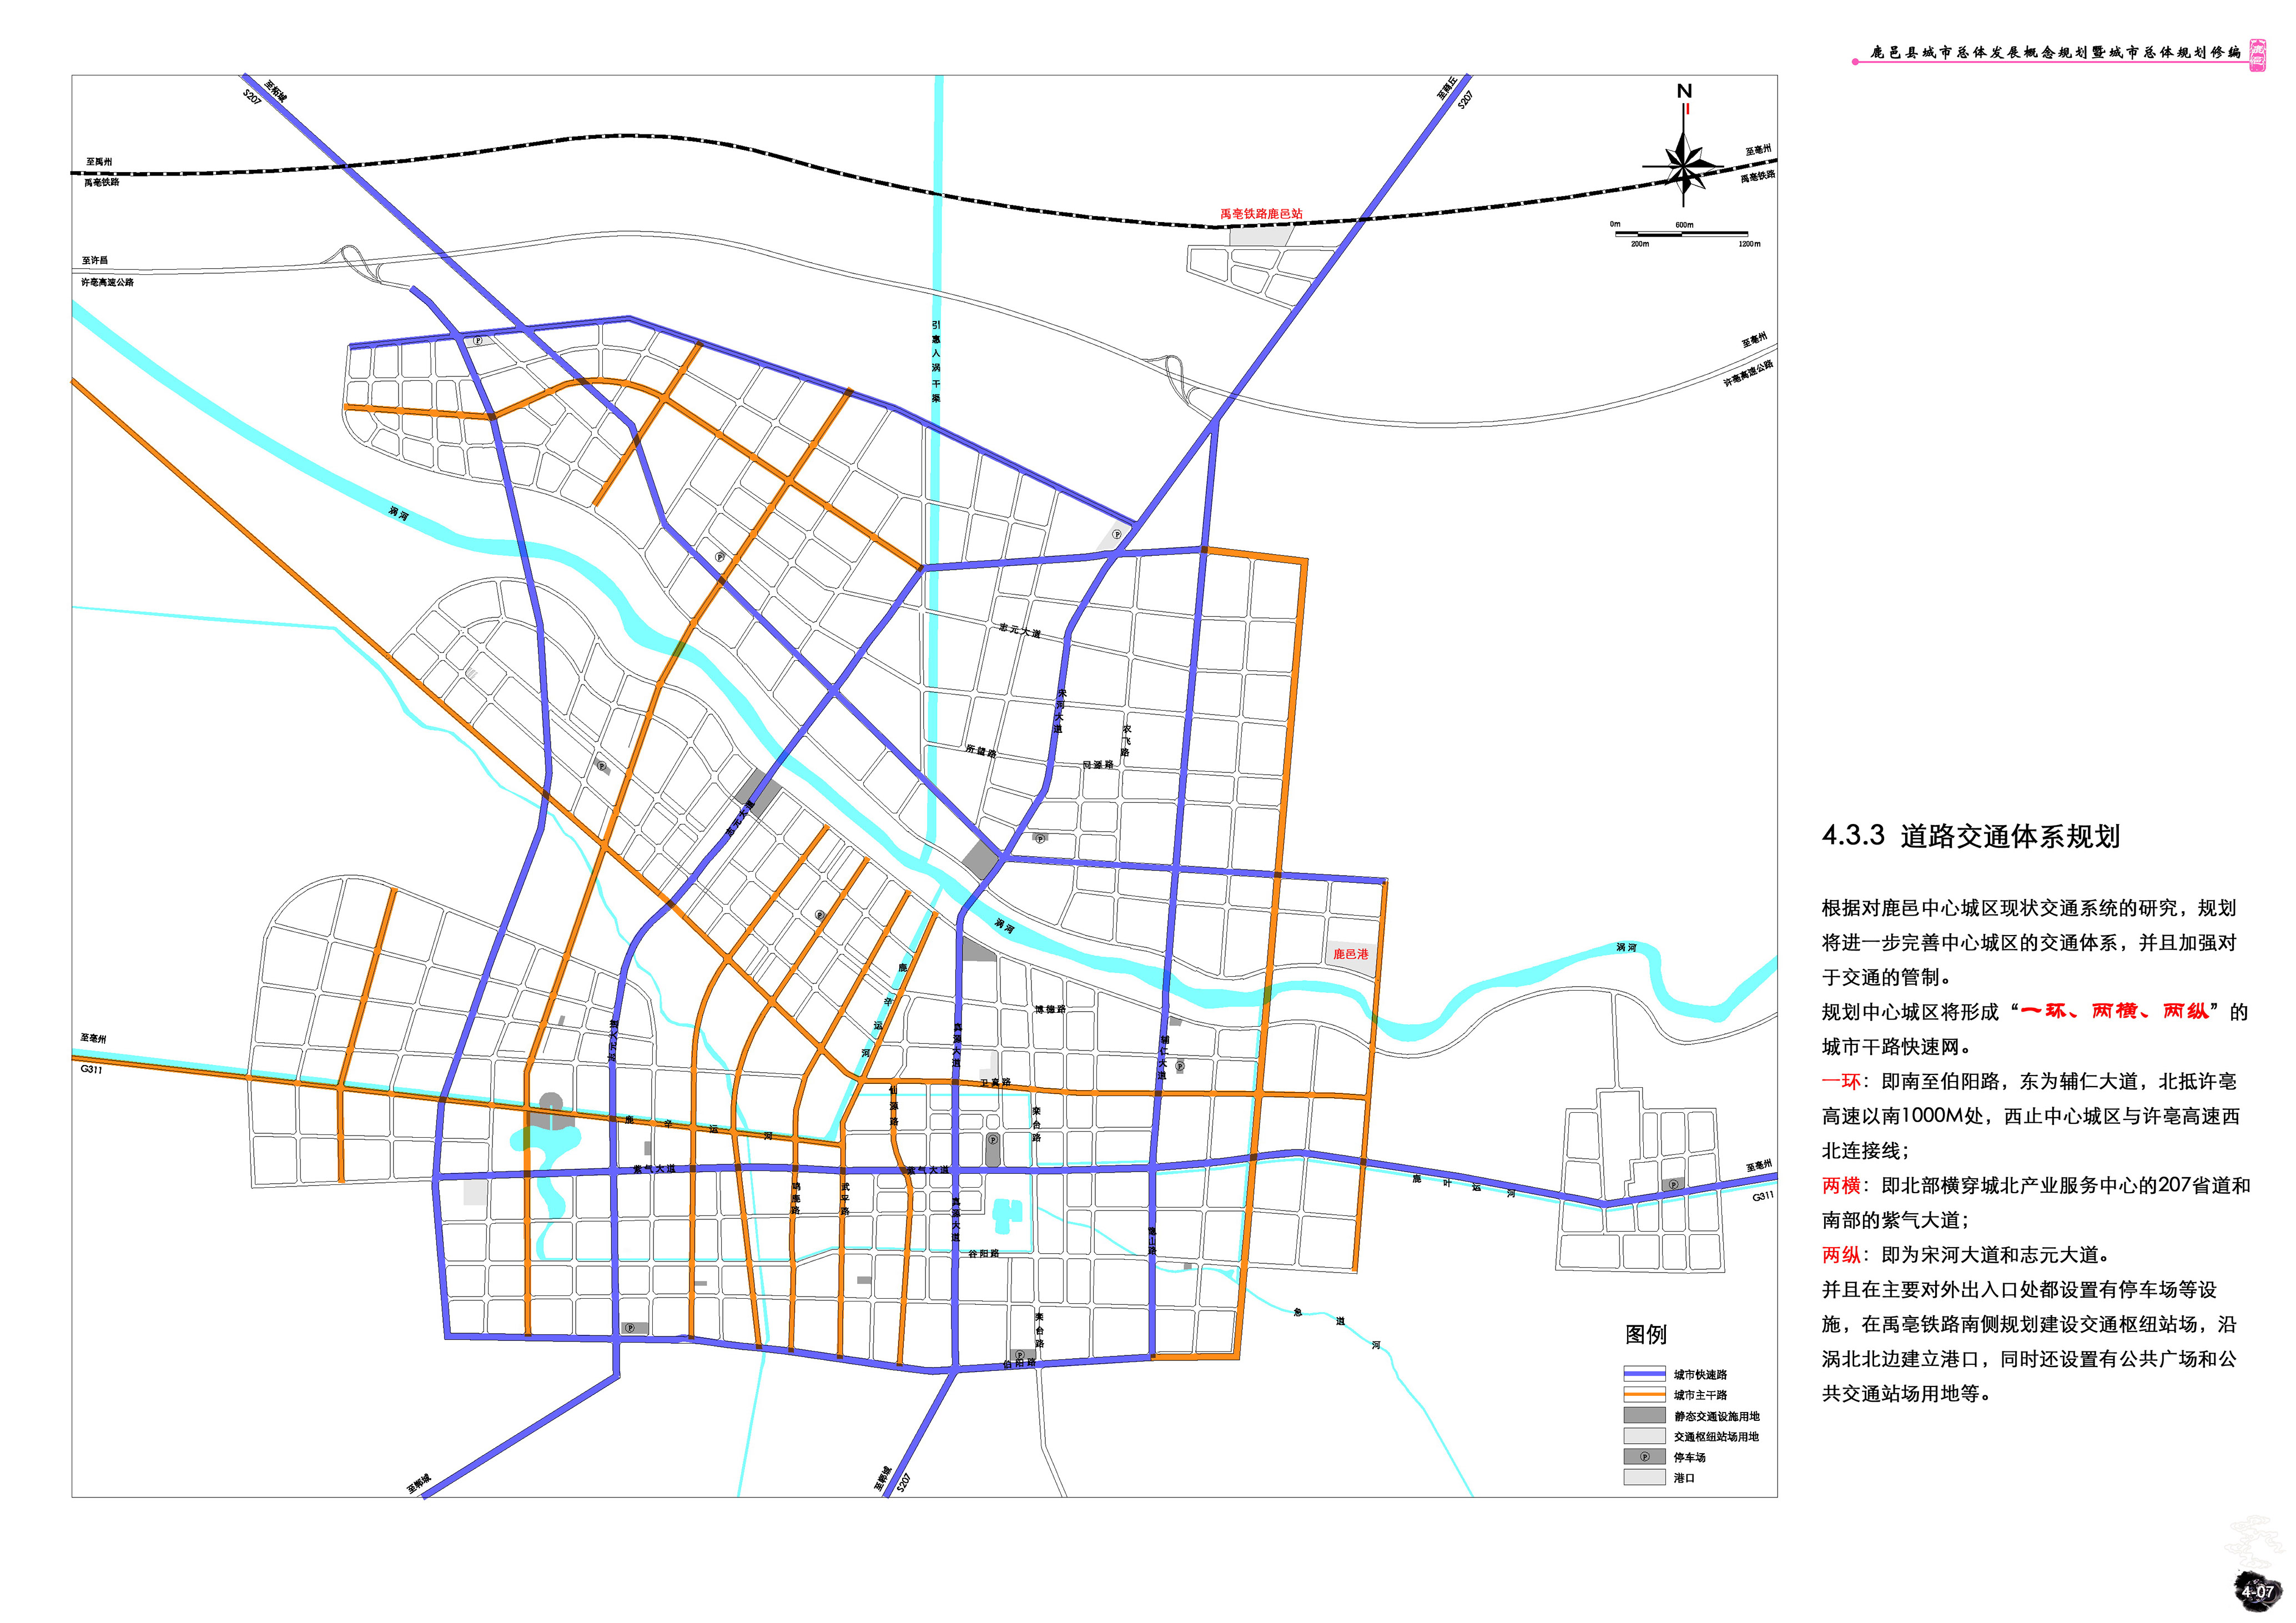 鹿邑县城市总体发展概念规划